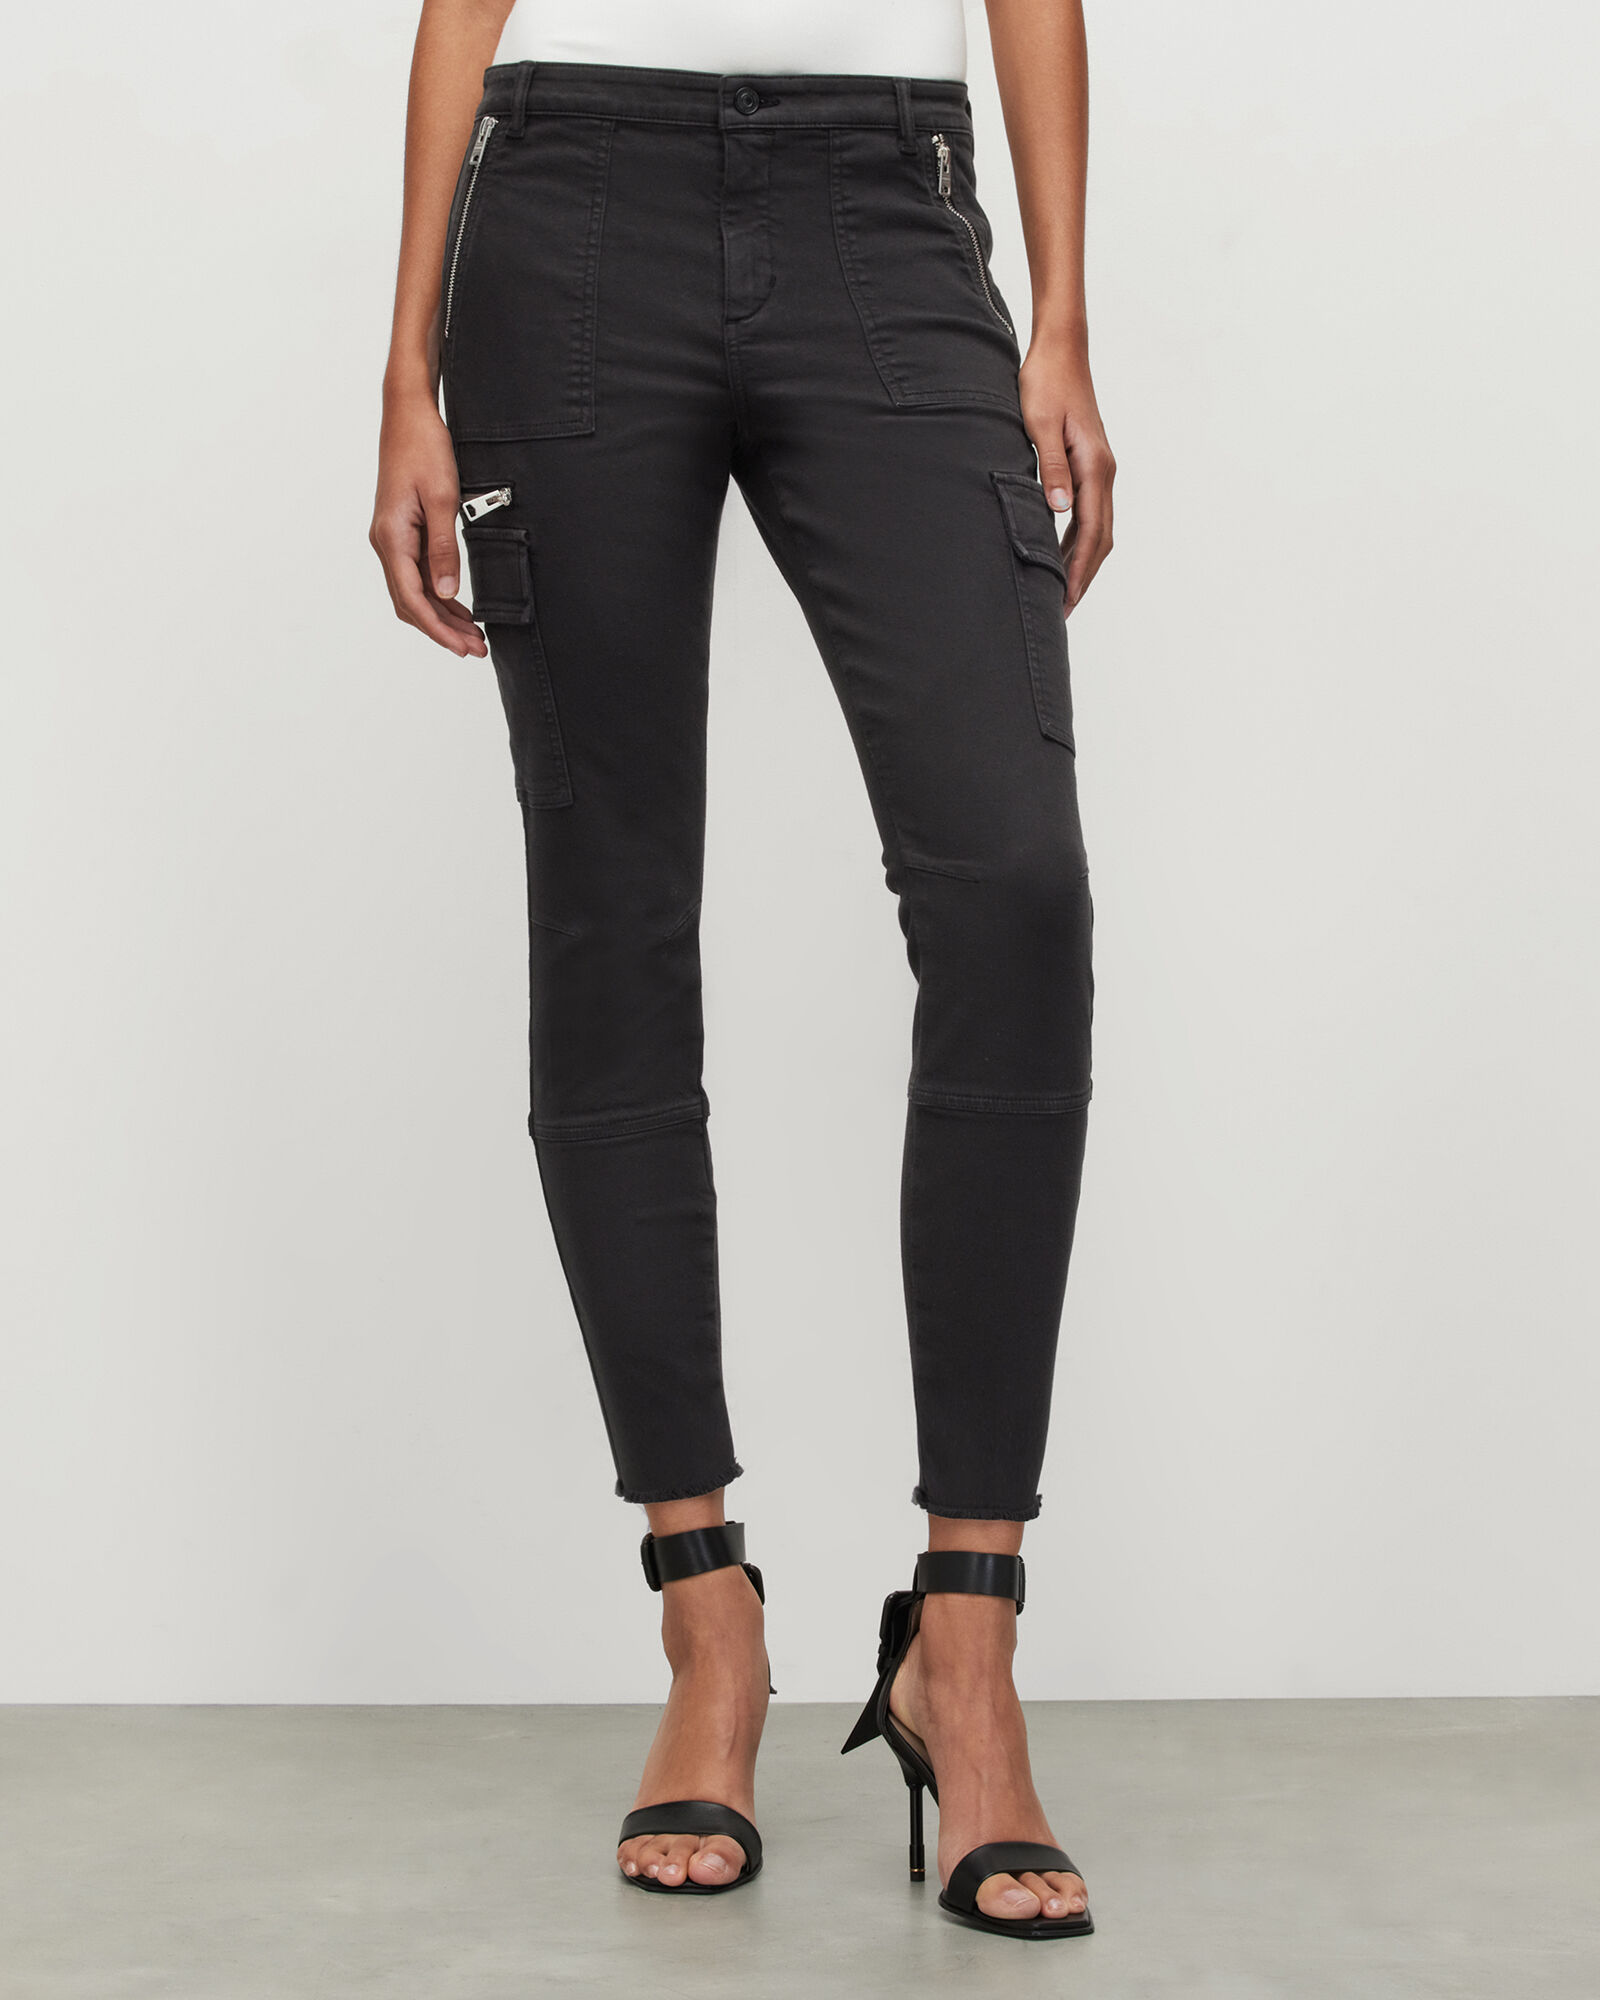 Ladies Cargo Pants Skinny Stretch Womens Jeans khaki Sizes 6 8 10 12 14   eBay